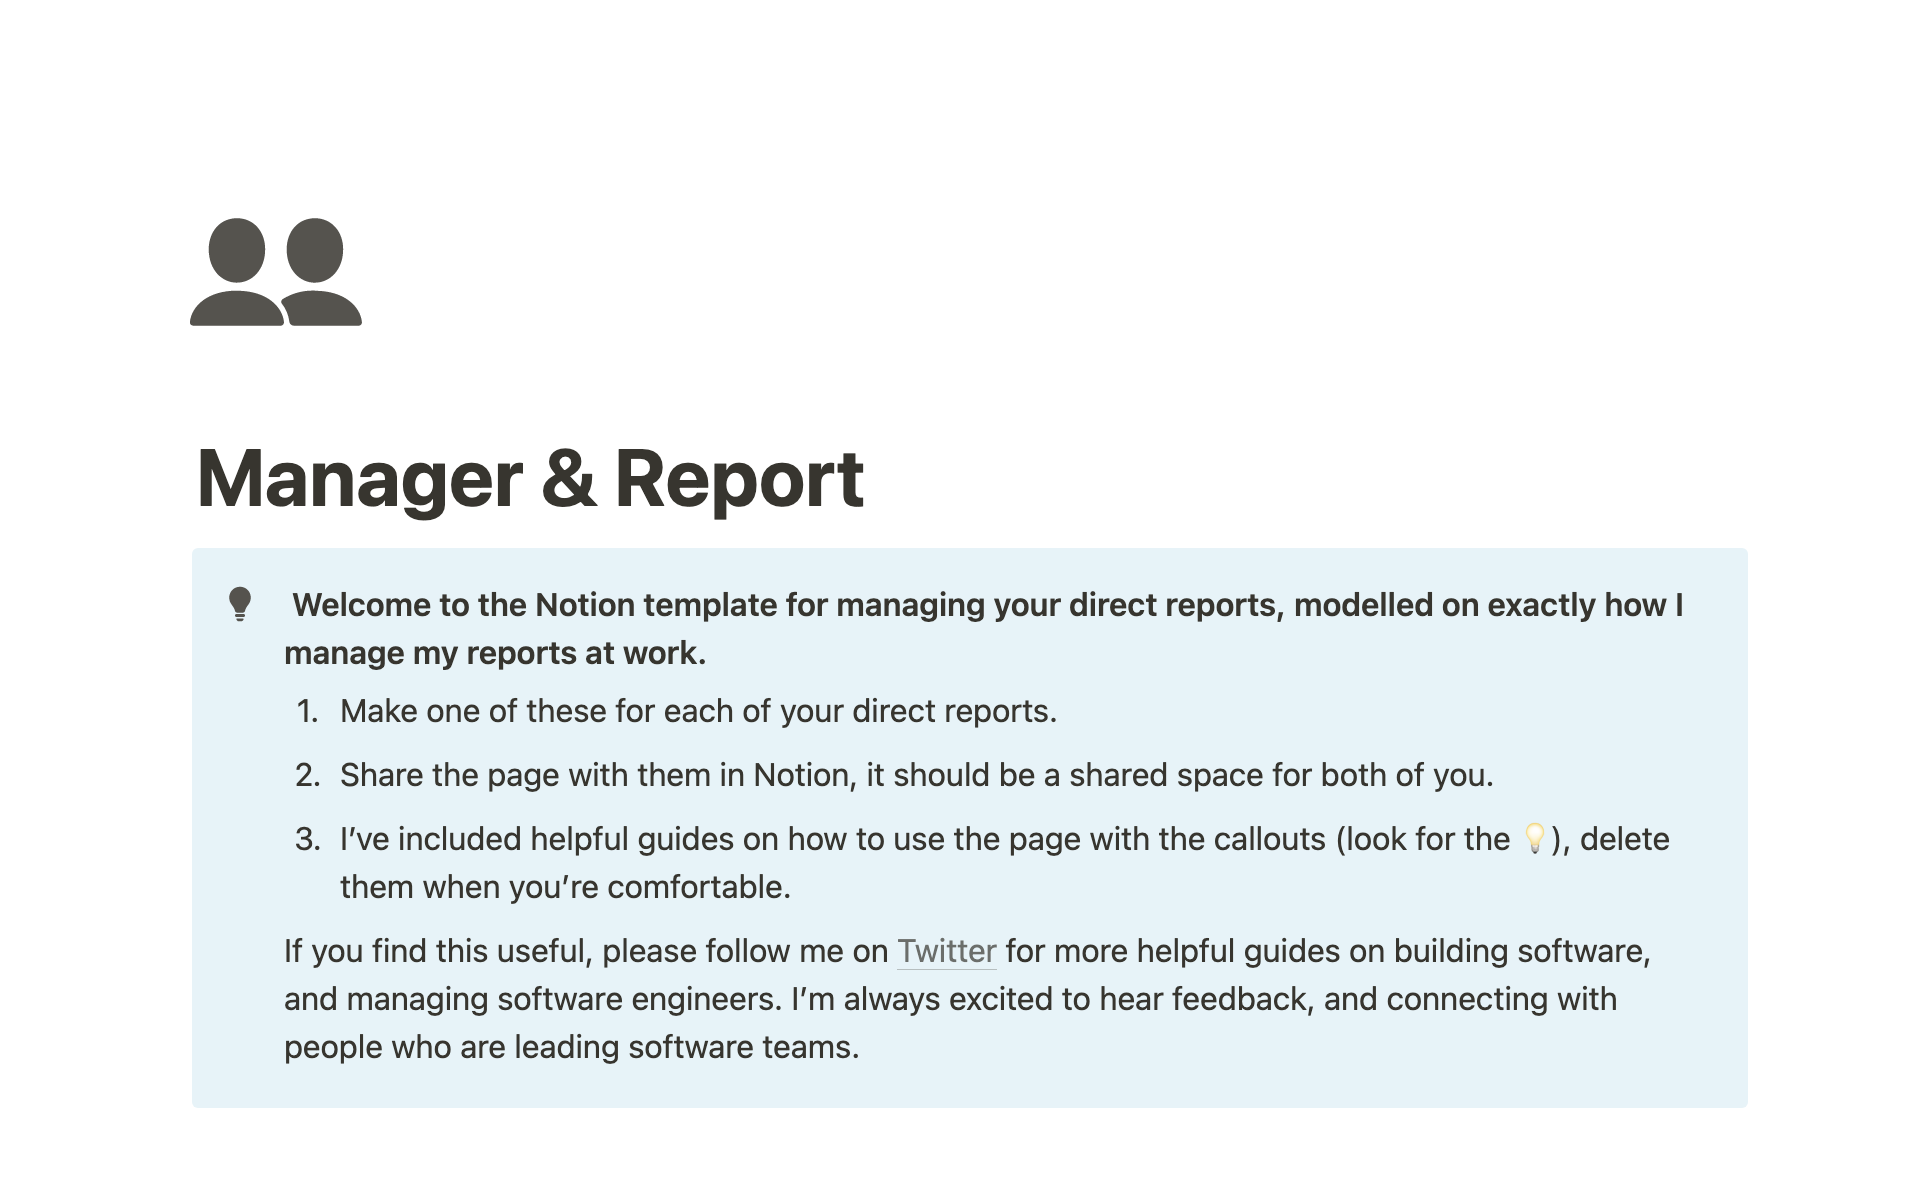 Uma prévia do modelo para Manager & Report